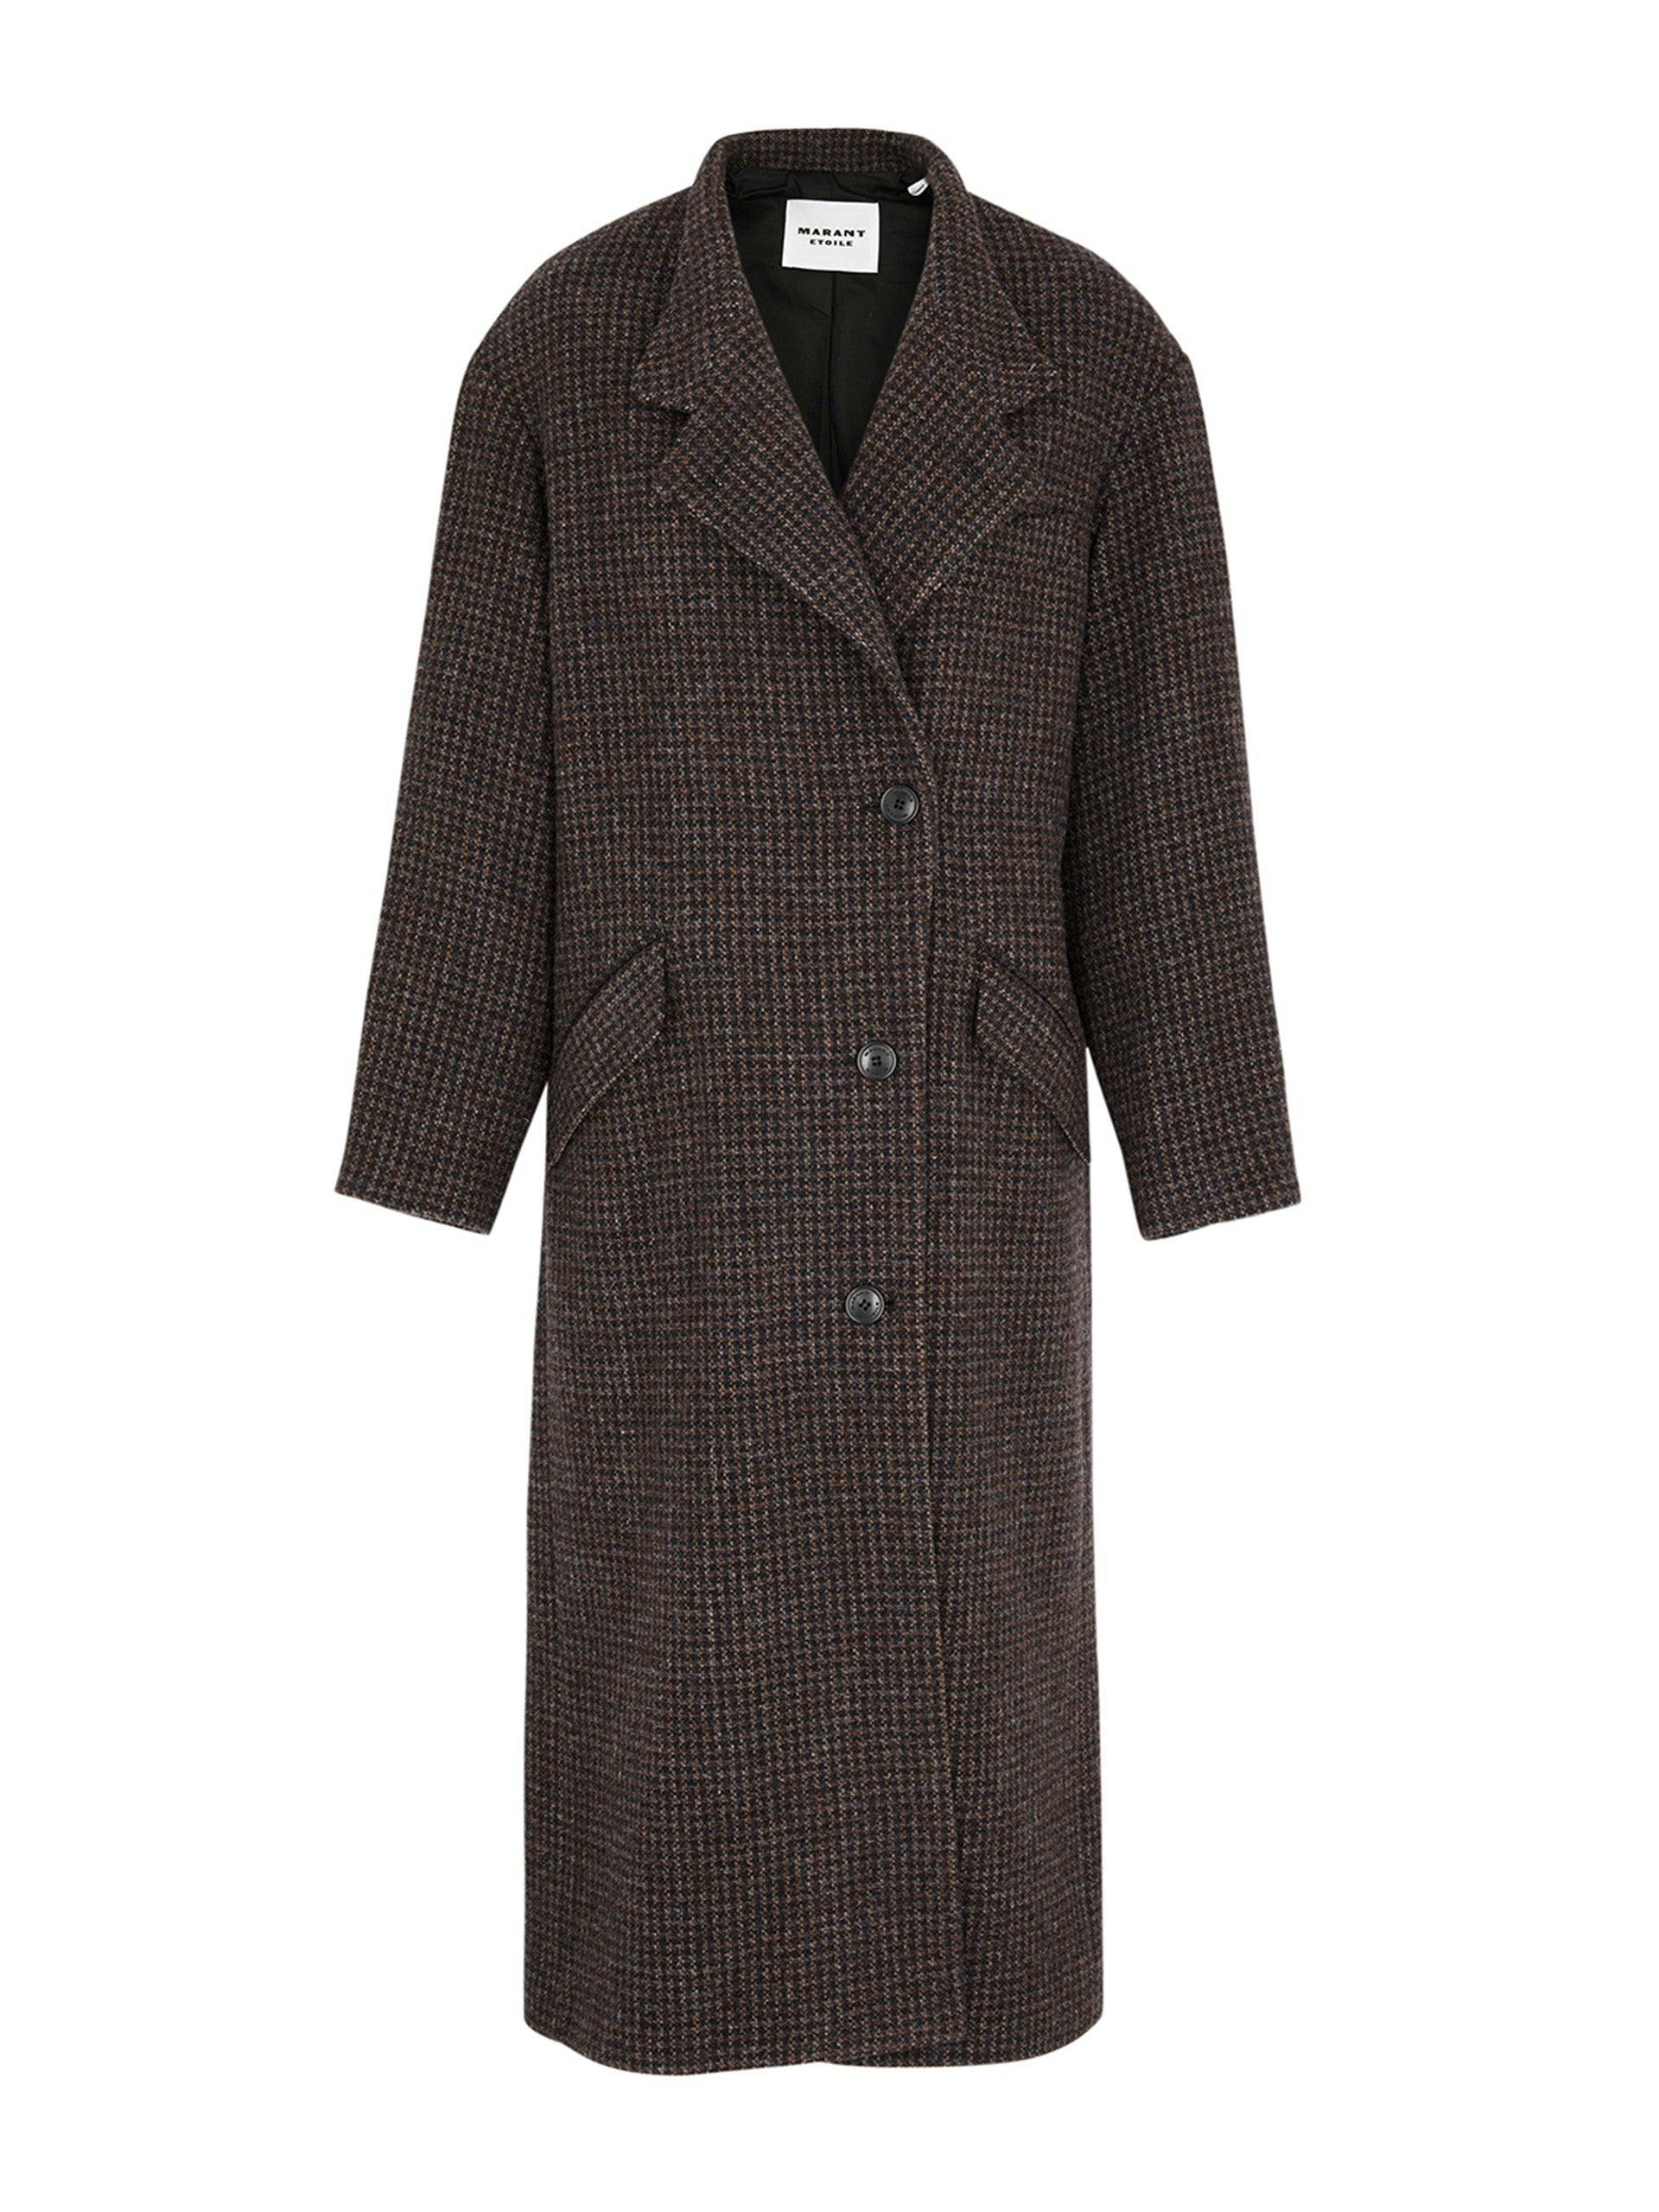 Sabine wool tweed coat